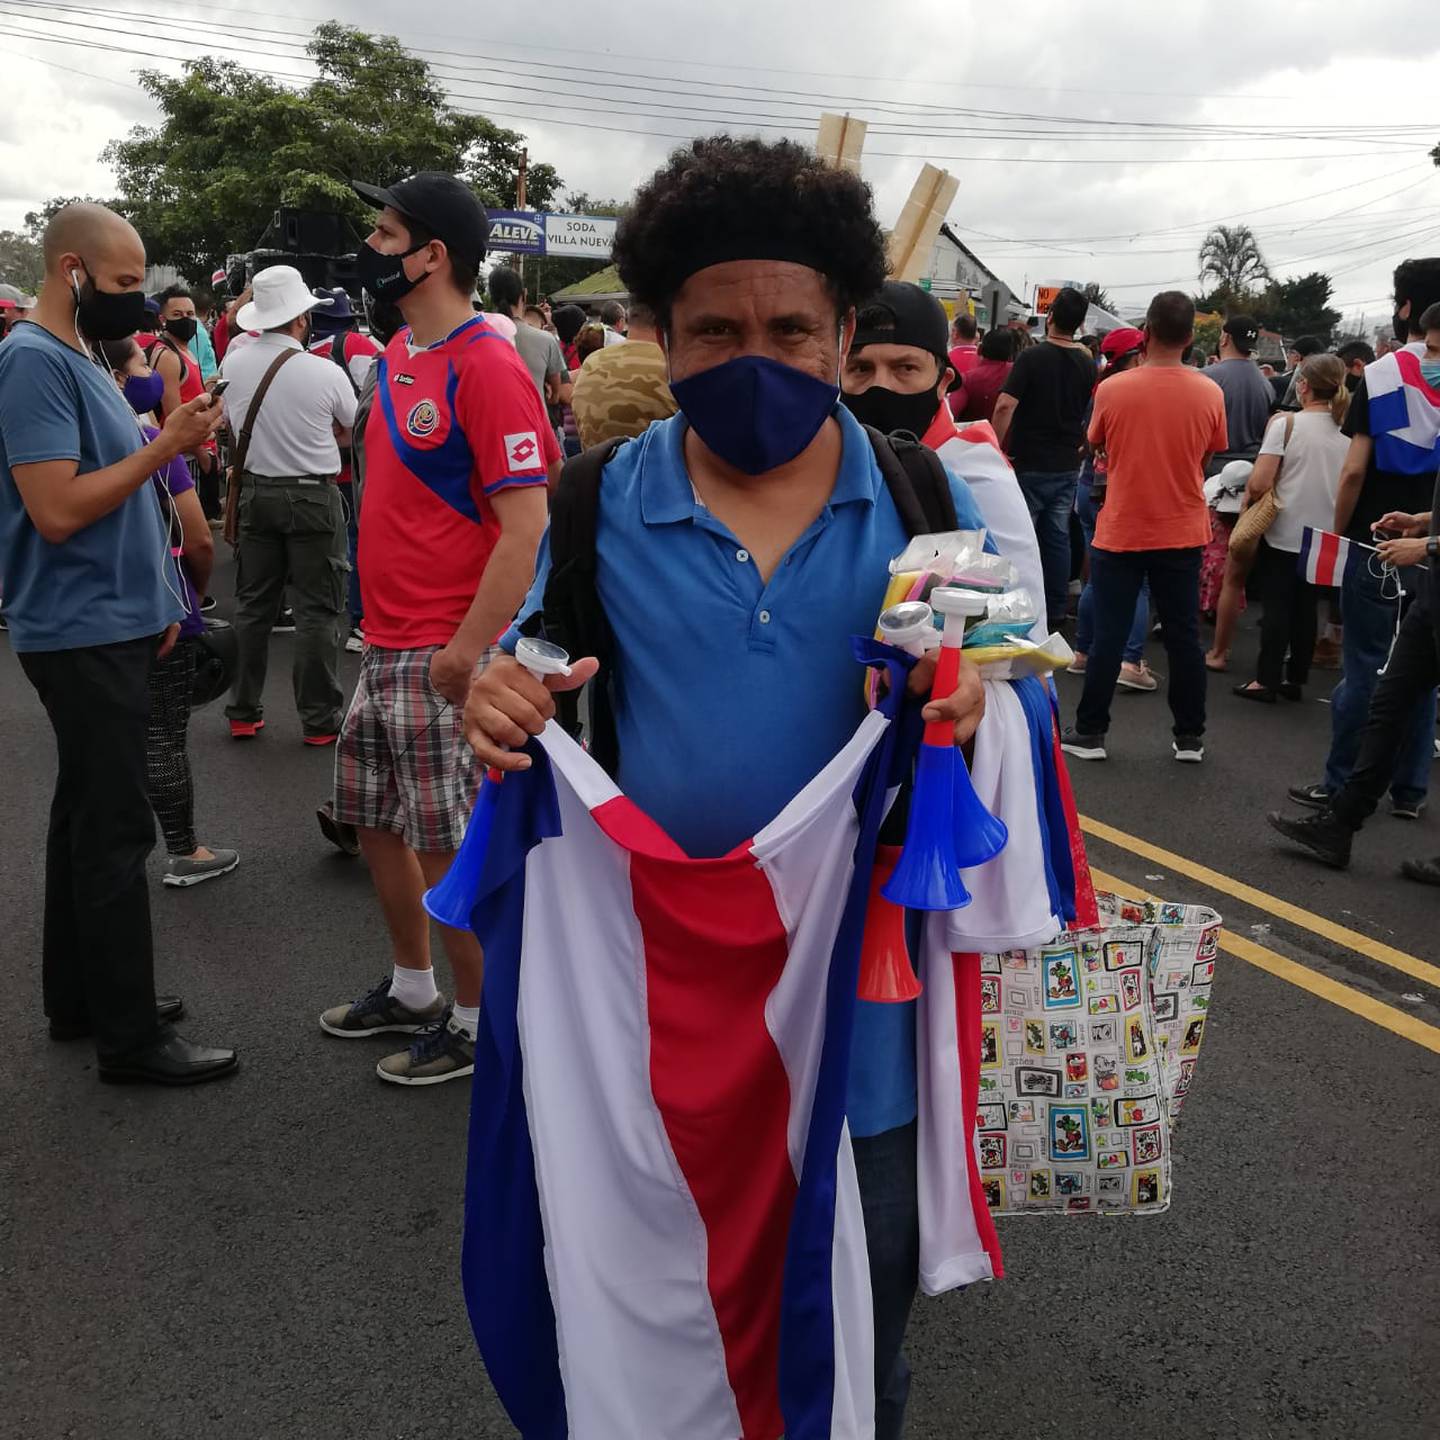 Heriberto Chaves es un pulseador que vendió banderas de Costa Rica el pasado martes 25 de agosto en la marcha que las hizo su esposa Maruenis Torres